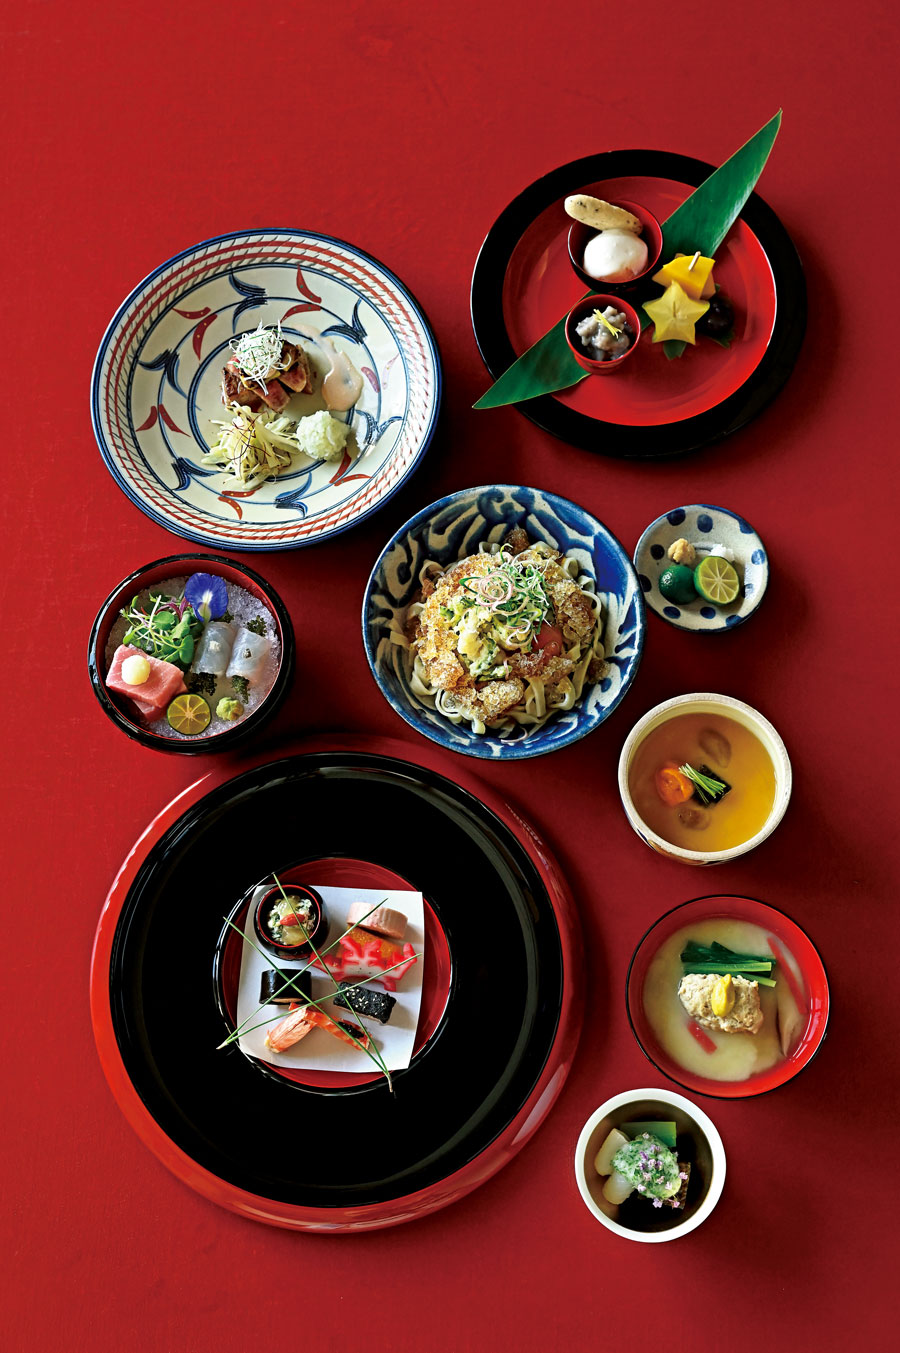 今春登場した「シラカチ 日本料理」の“琉球和会席”。夏メニュー (現在は提供終了) では、宮廷料理の象徴 “東道盆(とぅんだーぶん)” を手本とした前菜、“てびちとイラブの玉地蒸し” “沖縄そば、冷たいお出汁で” など、独創的な品々が。※冬メニューの提供は12月を予定。詳細はホテルのHPをご参照。